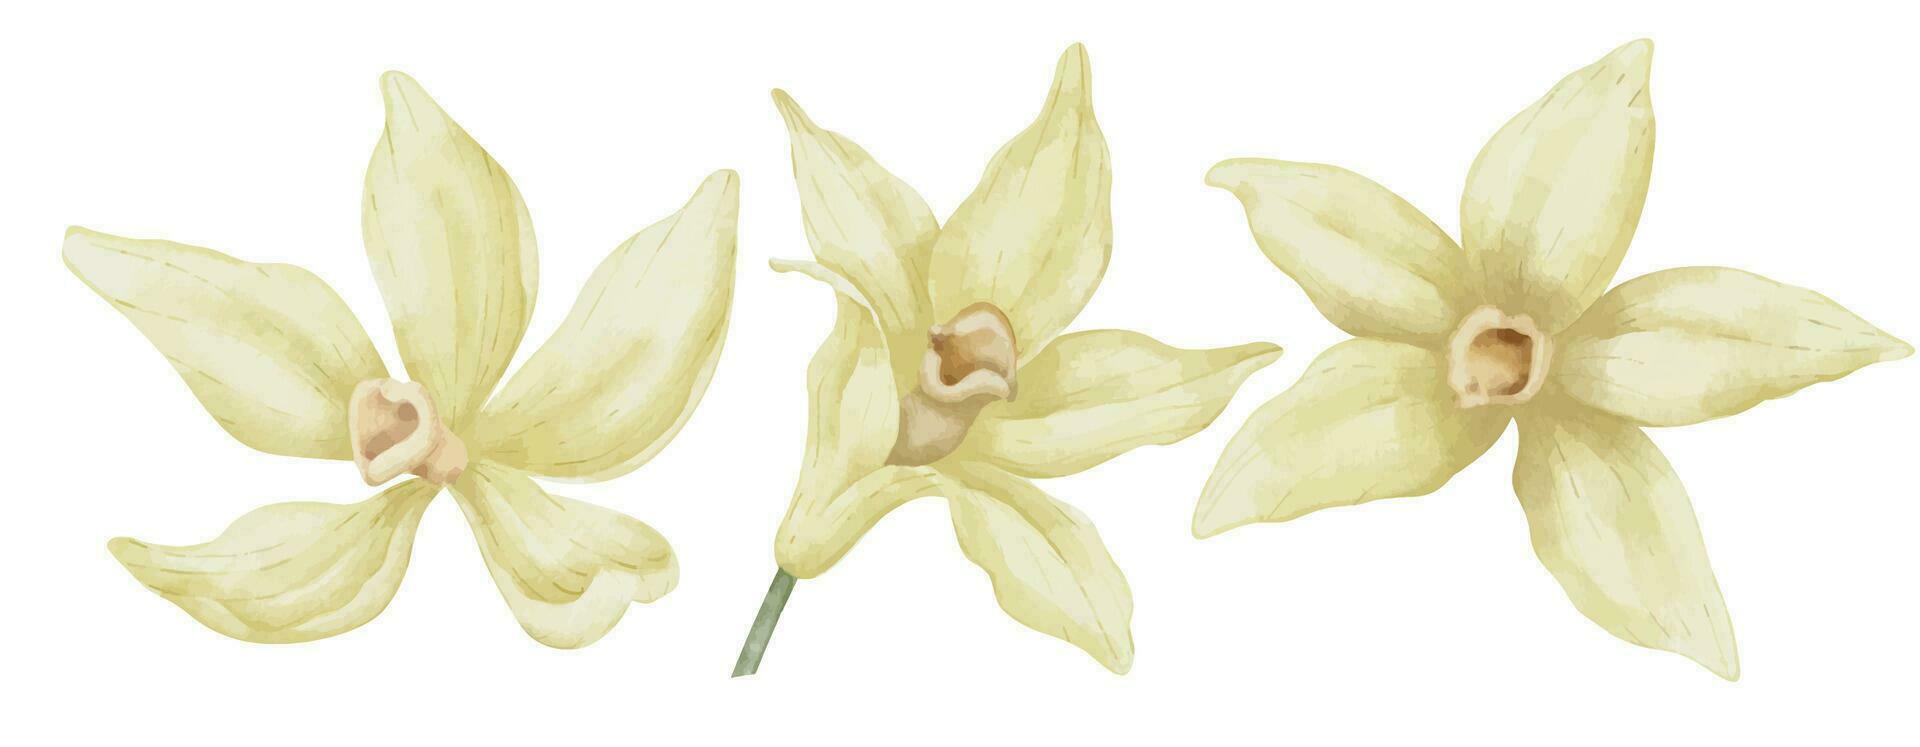 vainilla flores colocar. mano dibujado acuarela ilustración de amarillo orquídea plantas en blanco aislado antecedentes. dibujo de herbario ingrediente para Cocinando o aroma sabor. haz de floreciente plantas vector